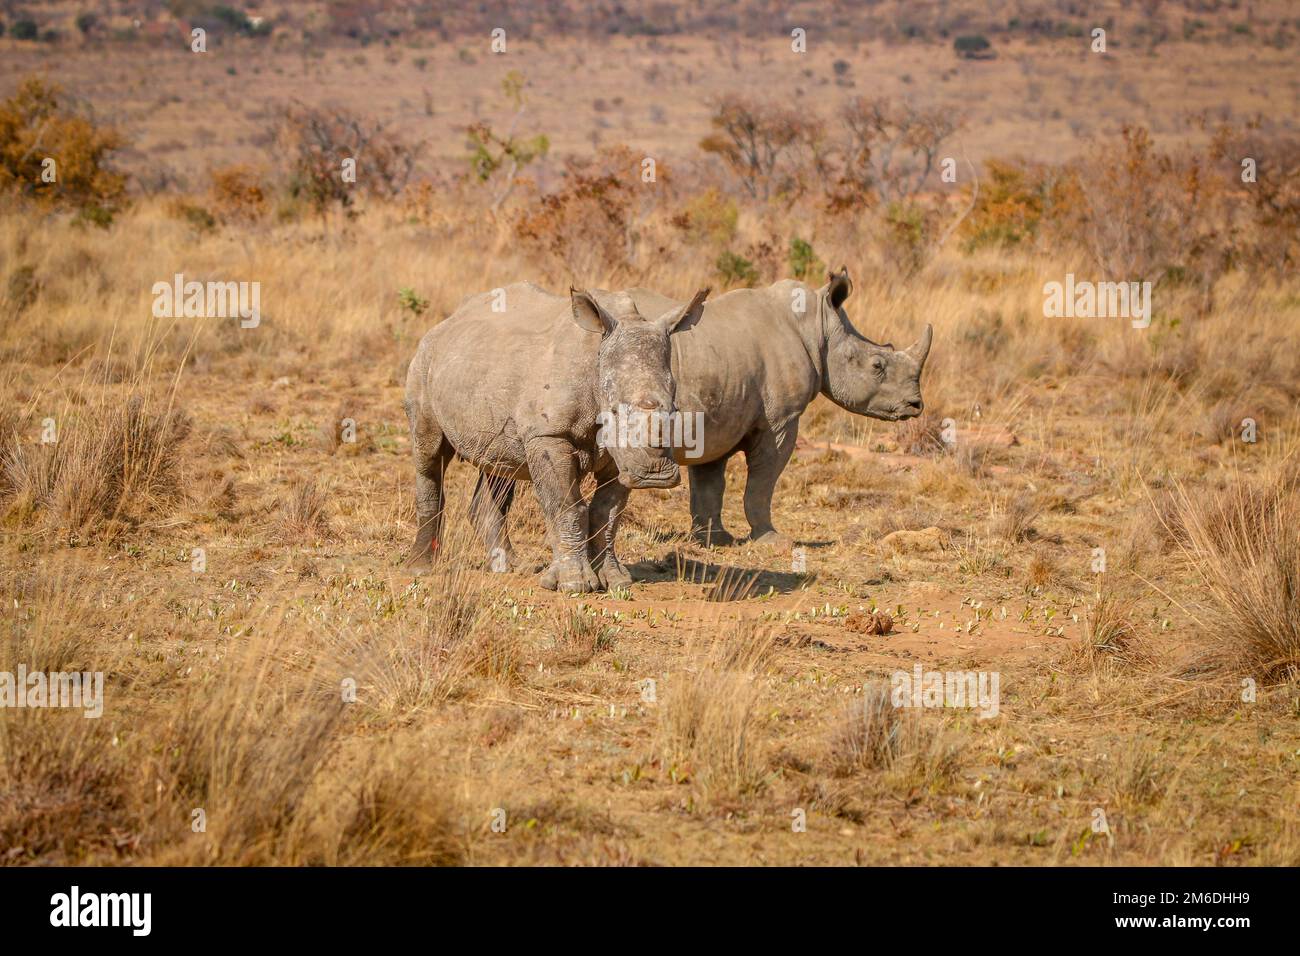 Deux rhinocéros blancs debout dans l'herbe. Banque D'Images